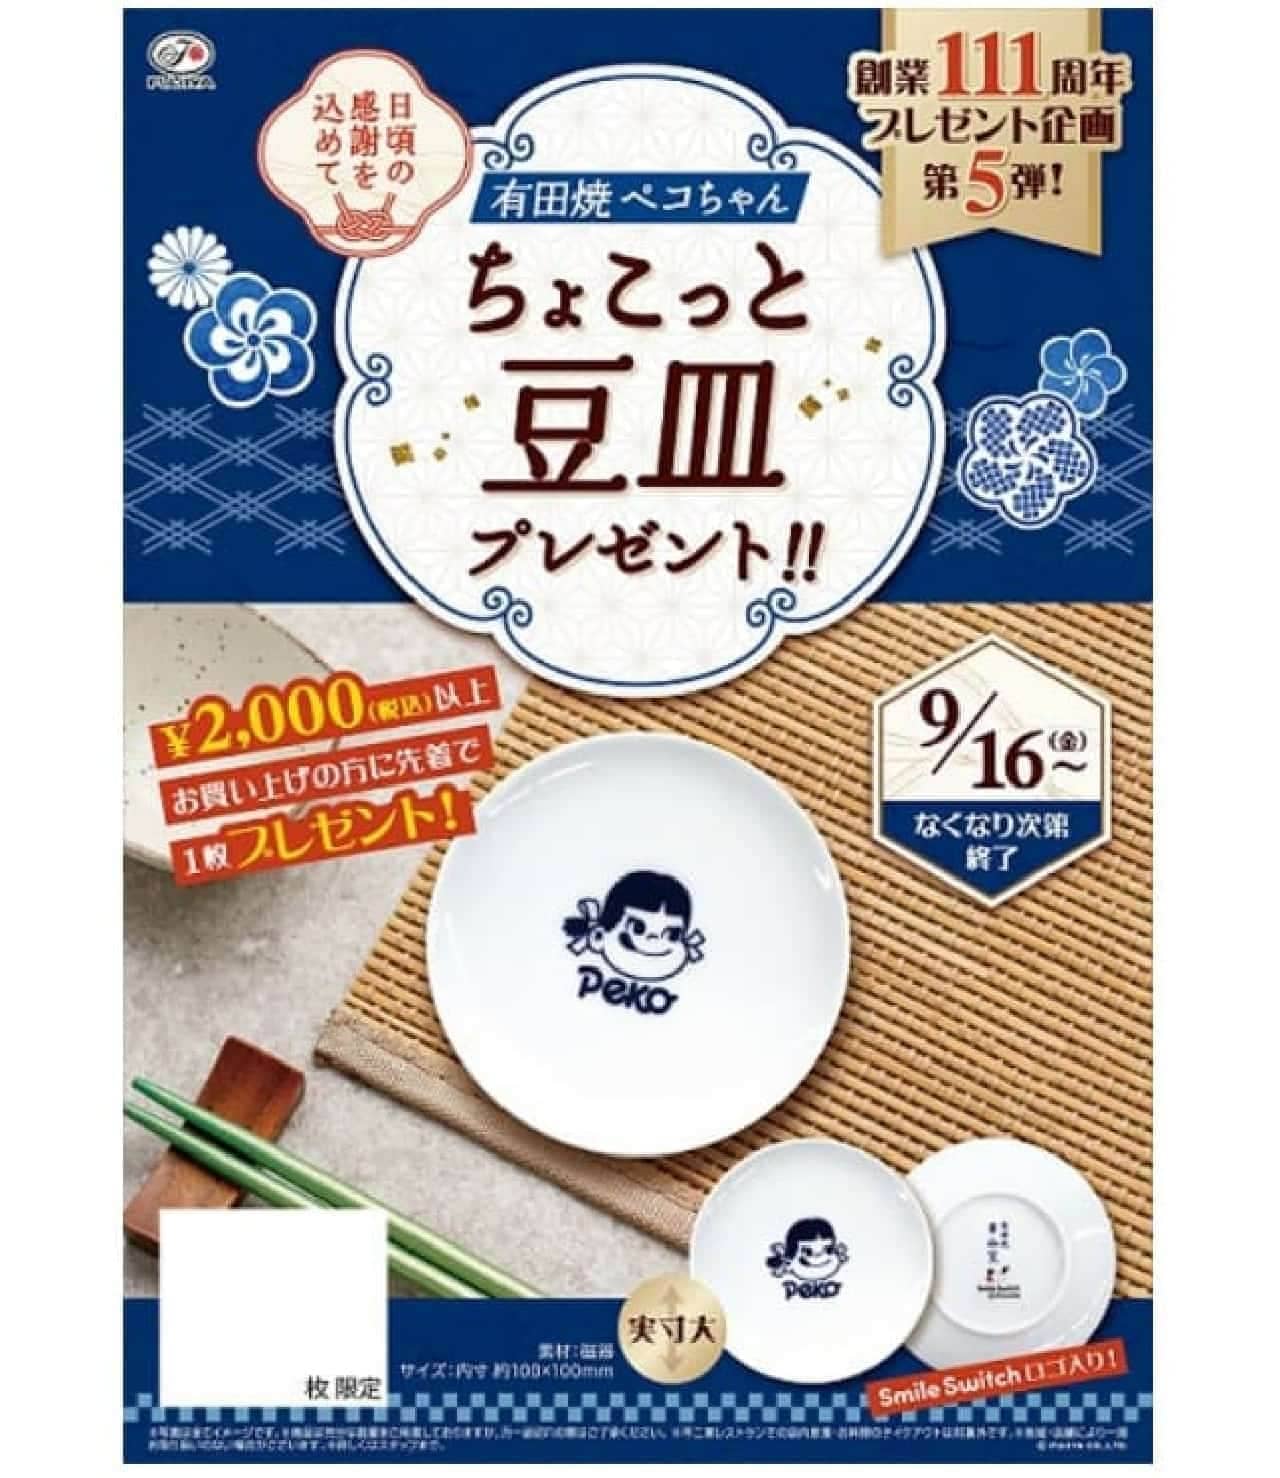 不二家洋菓子店「有田焼ペコちゃんちょこっと豆皿」プレゼントキャンペーン